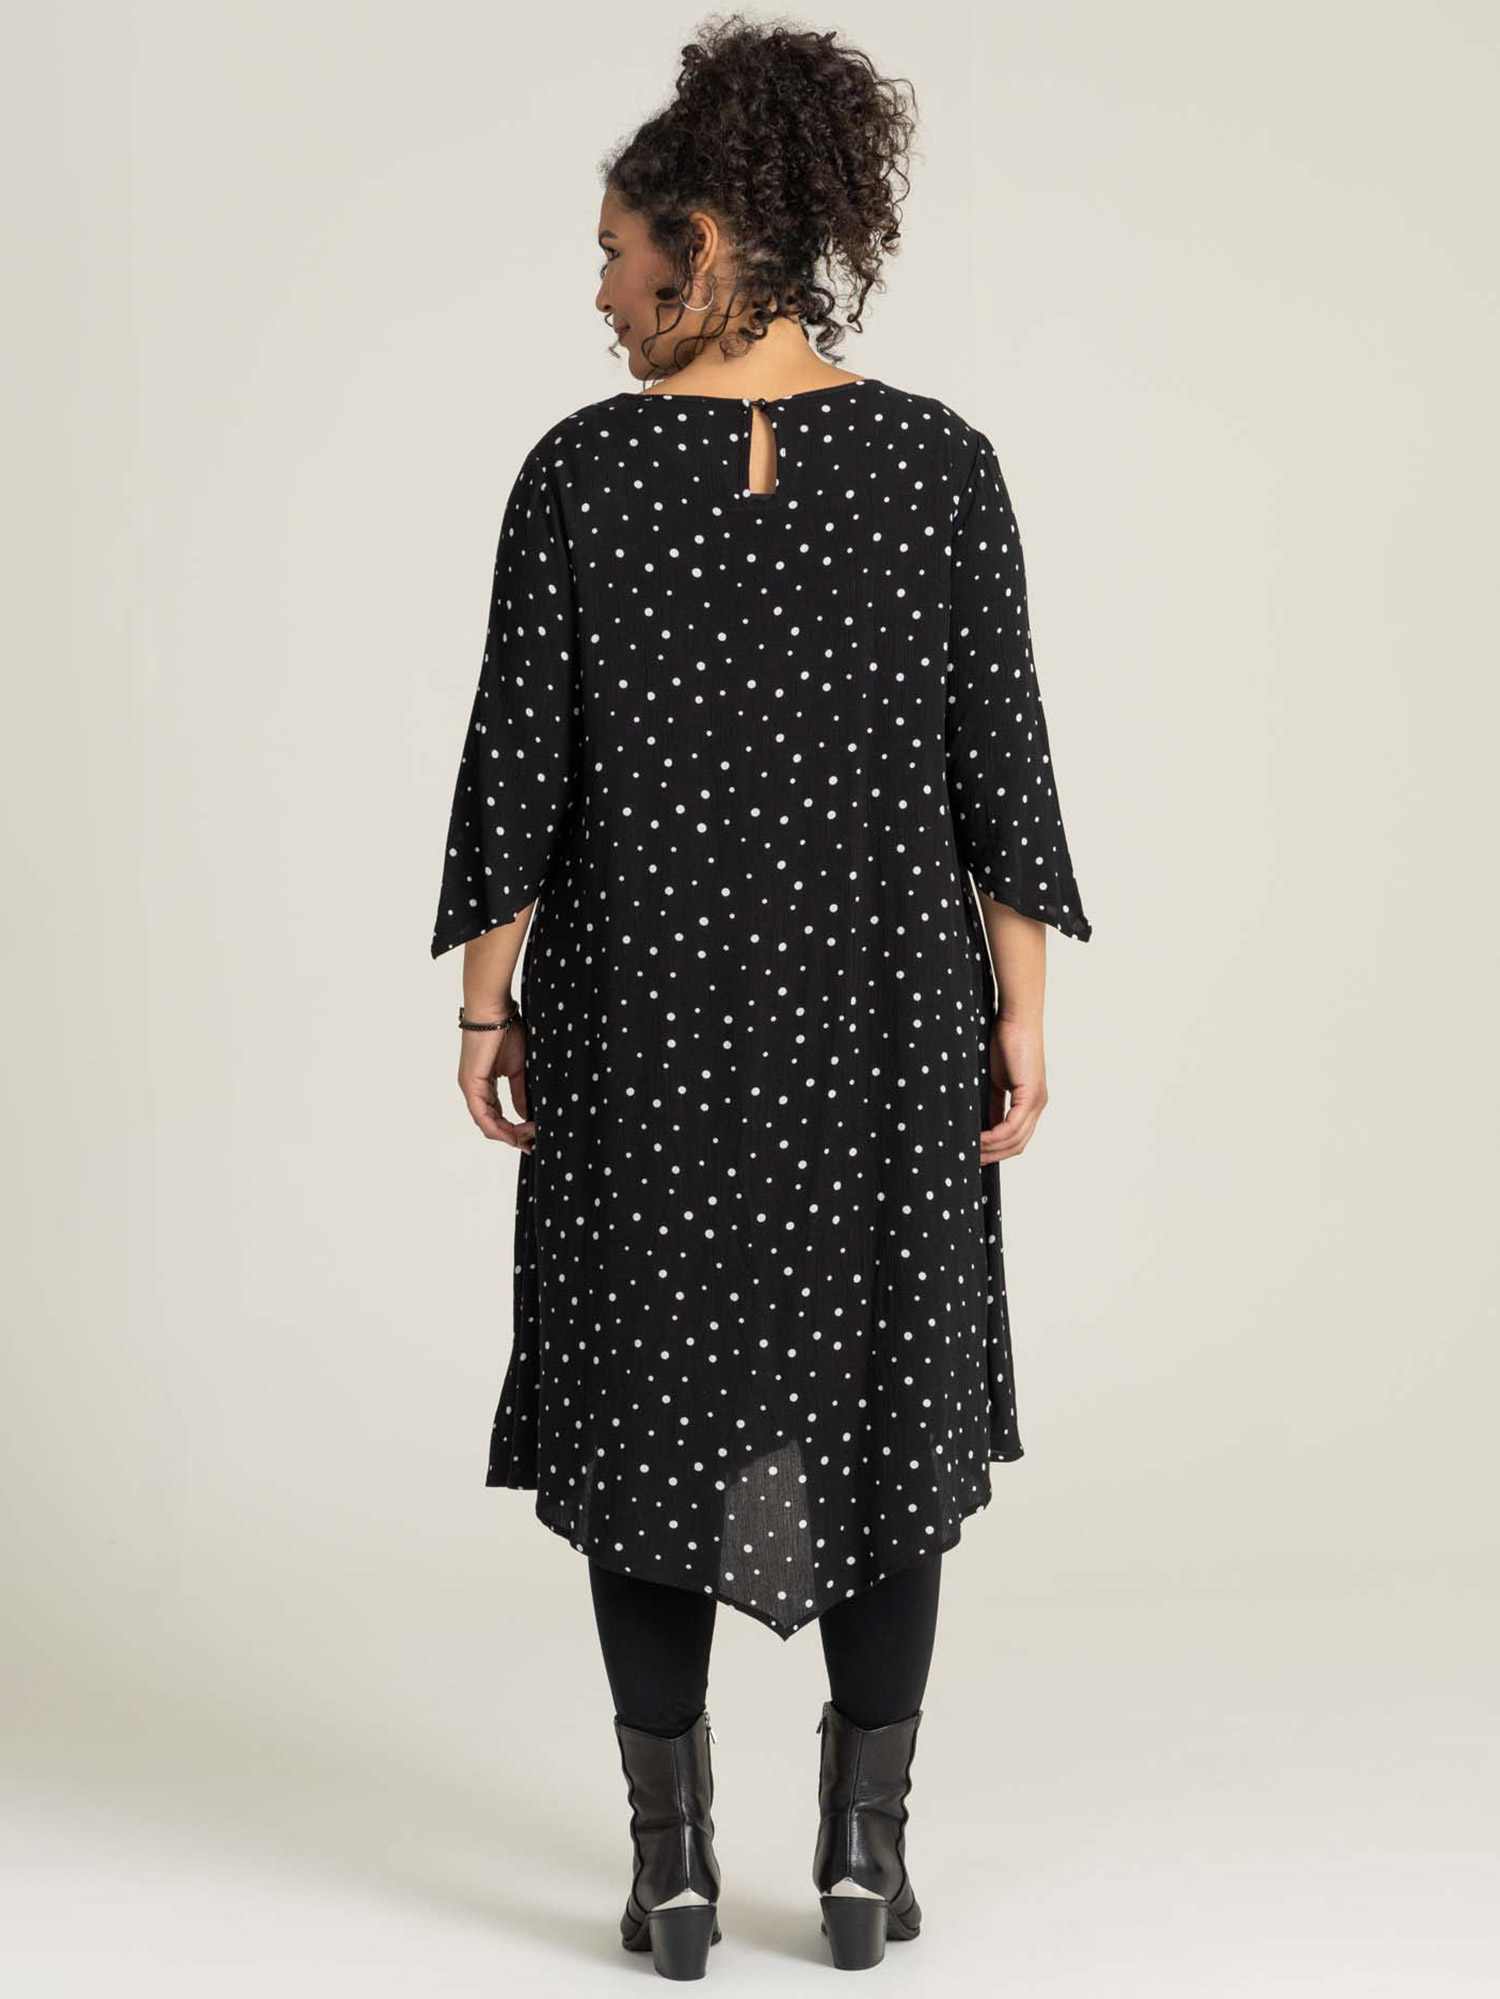 PERNILLE - Sort kjole viskose chiffon med hvide prikker fra Studio